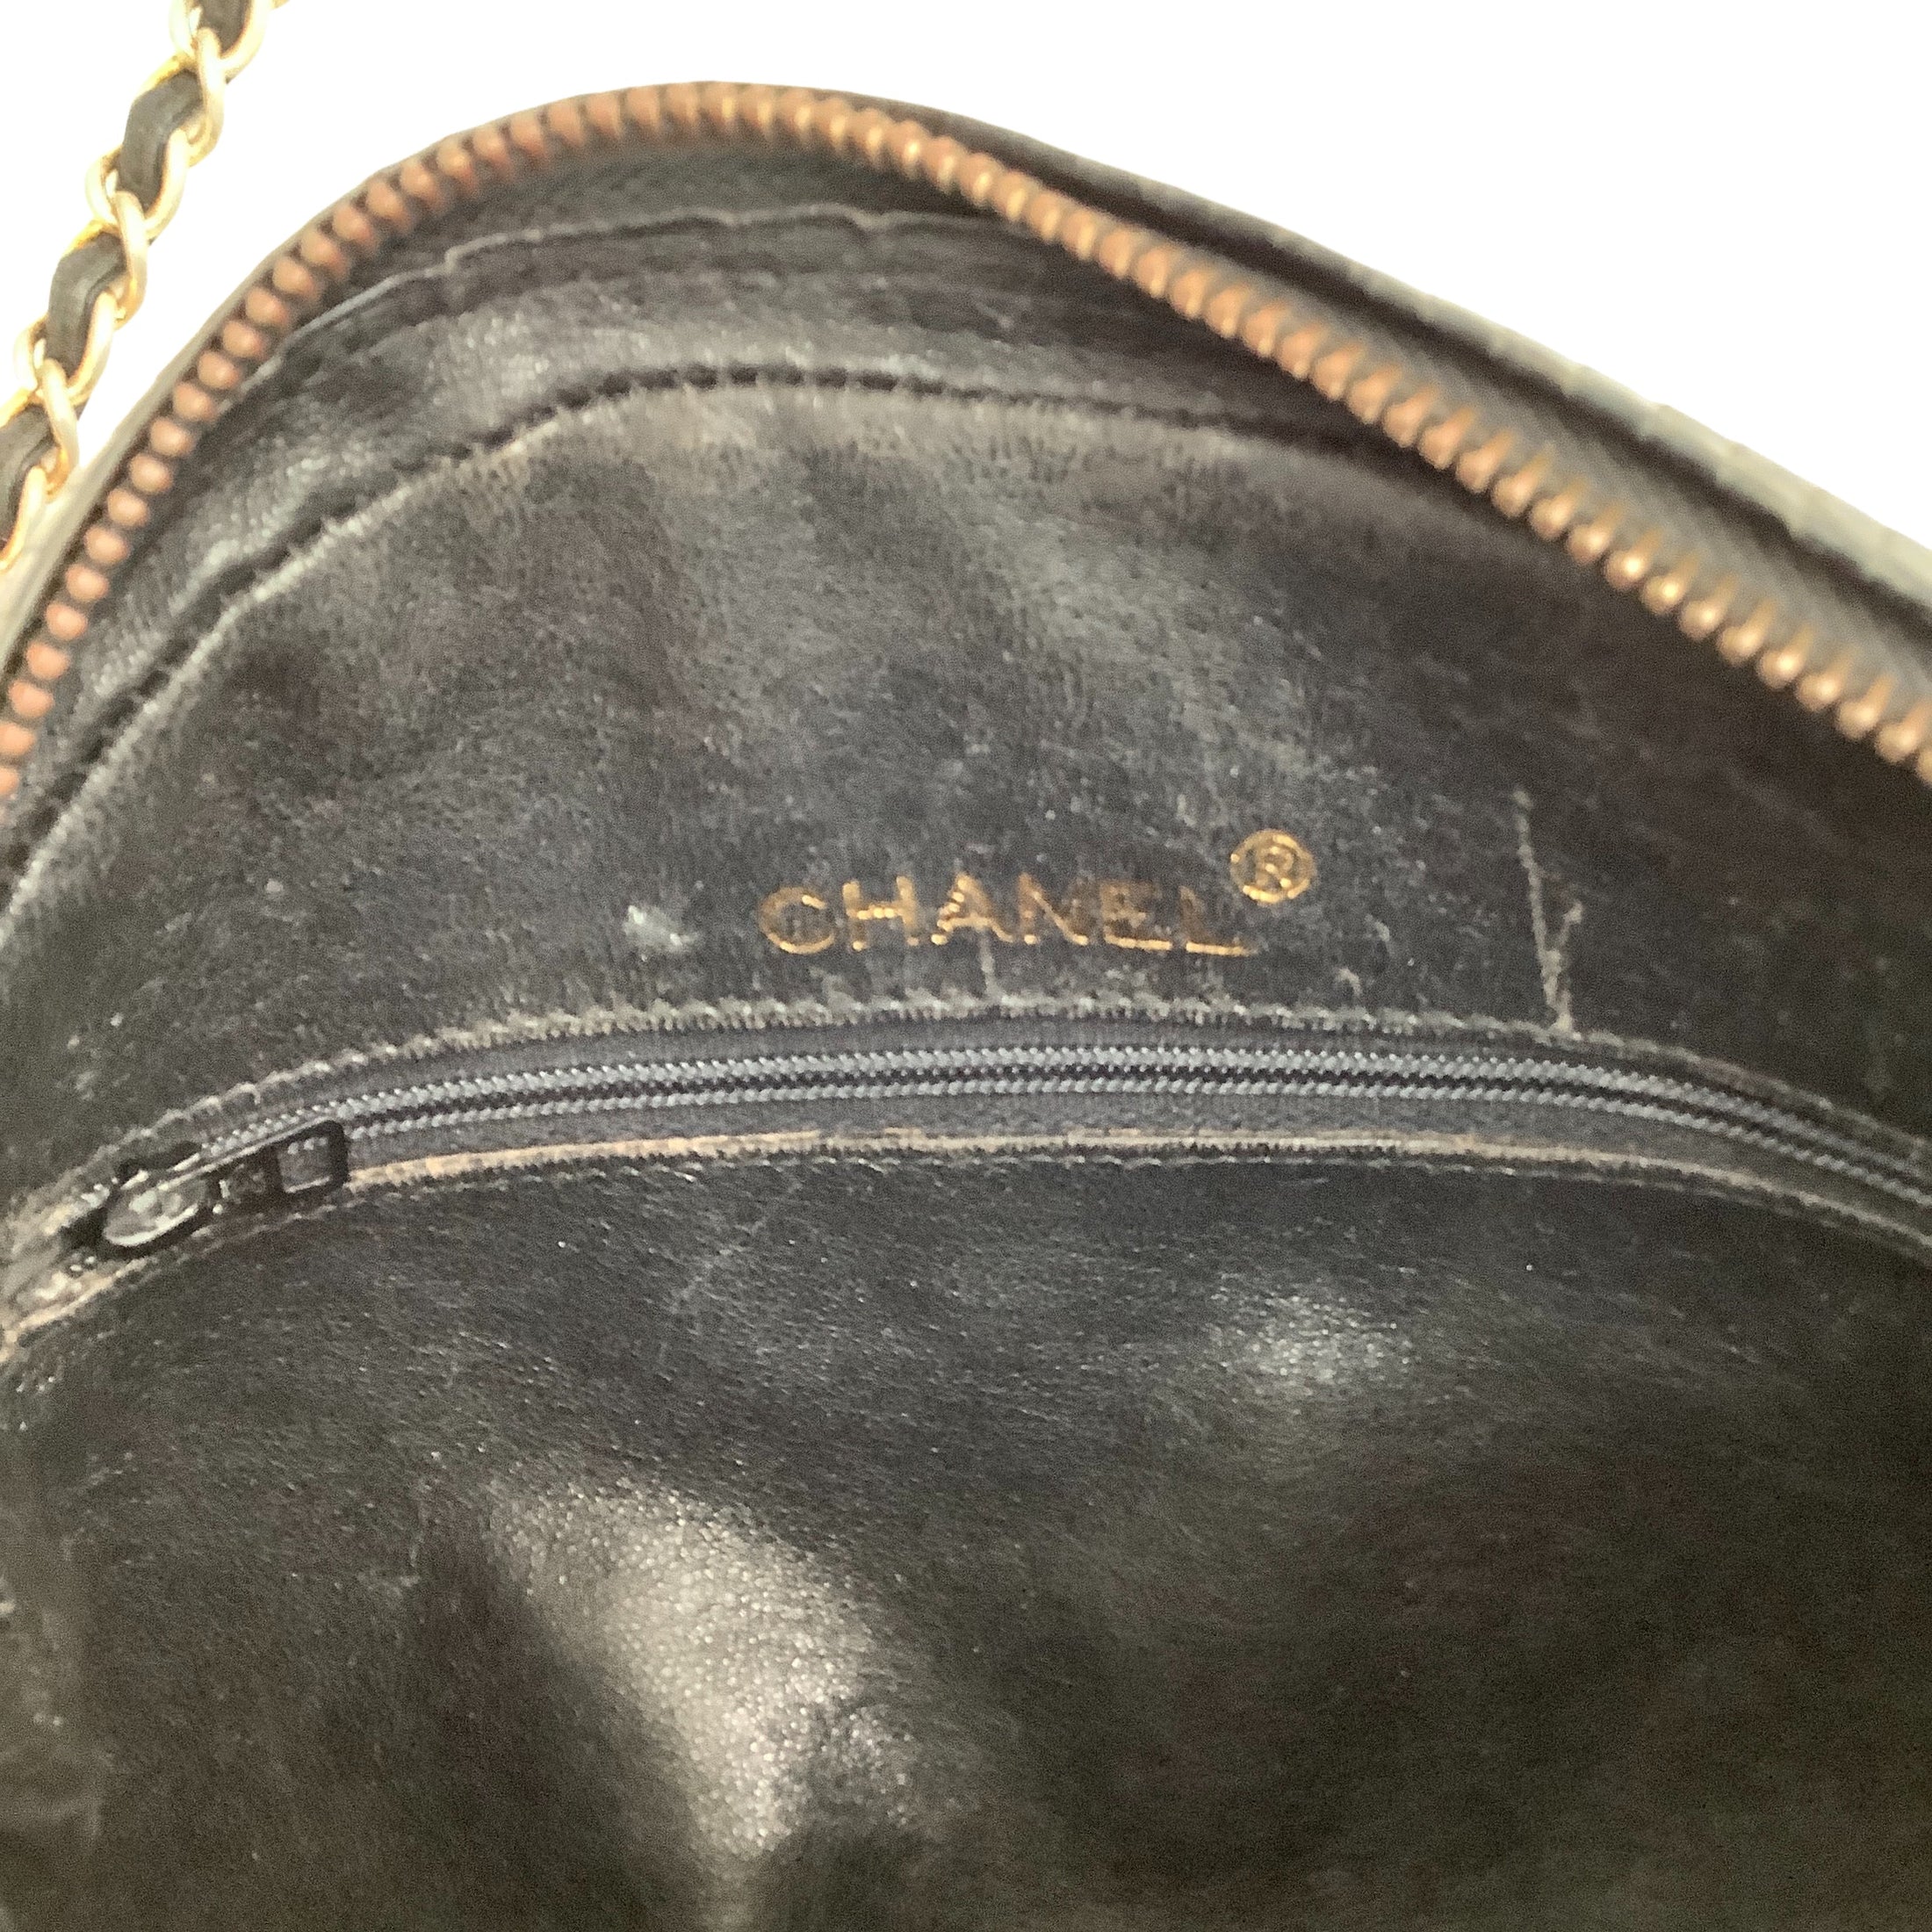 Chanel Vintage Quilted Black Lizard Skin Leather Shoulder Bag